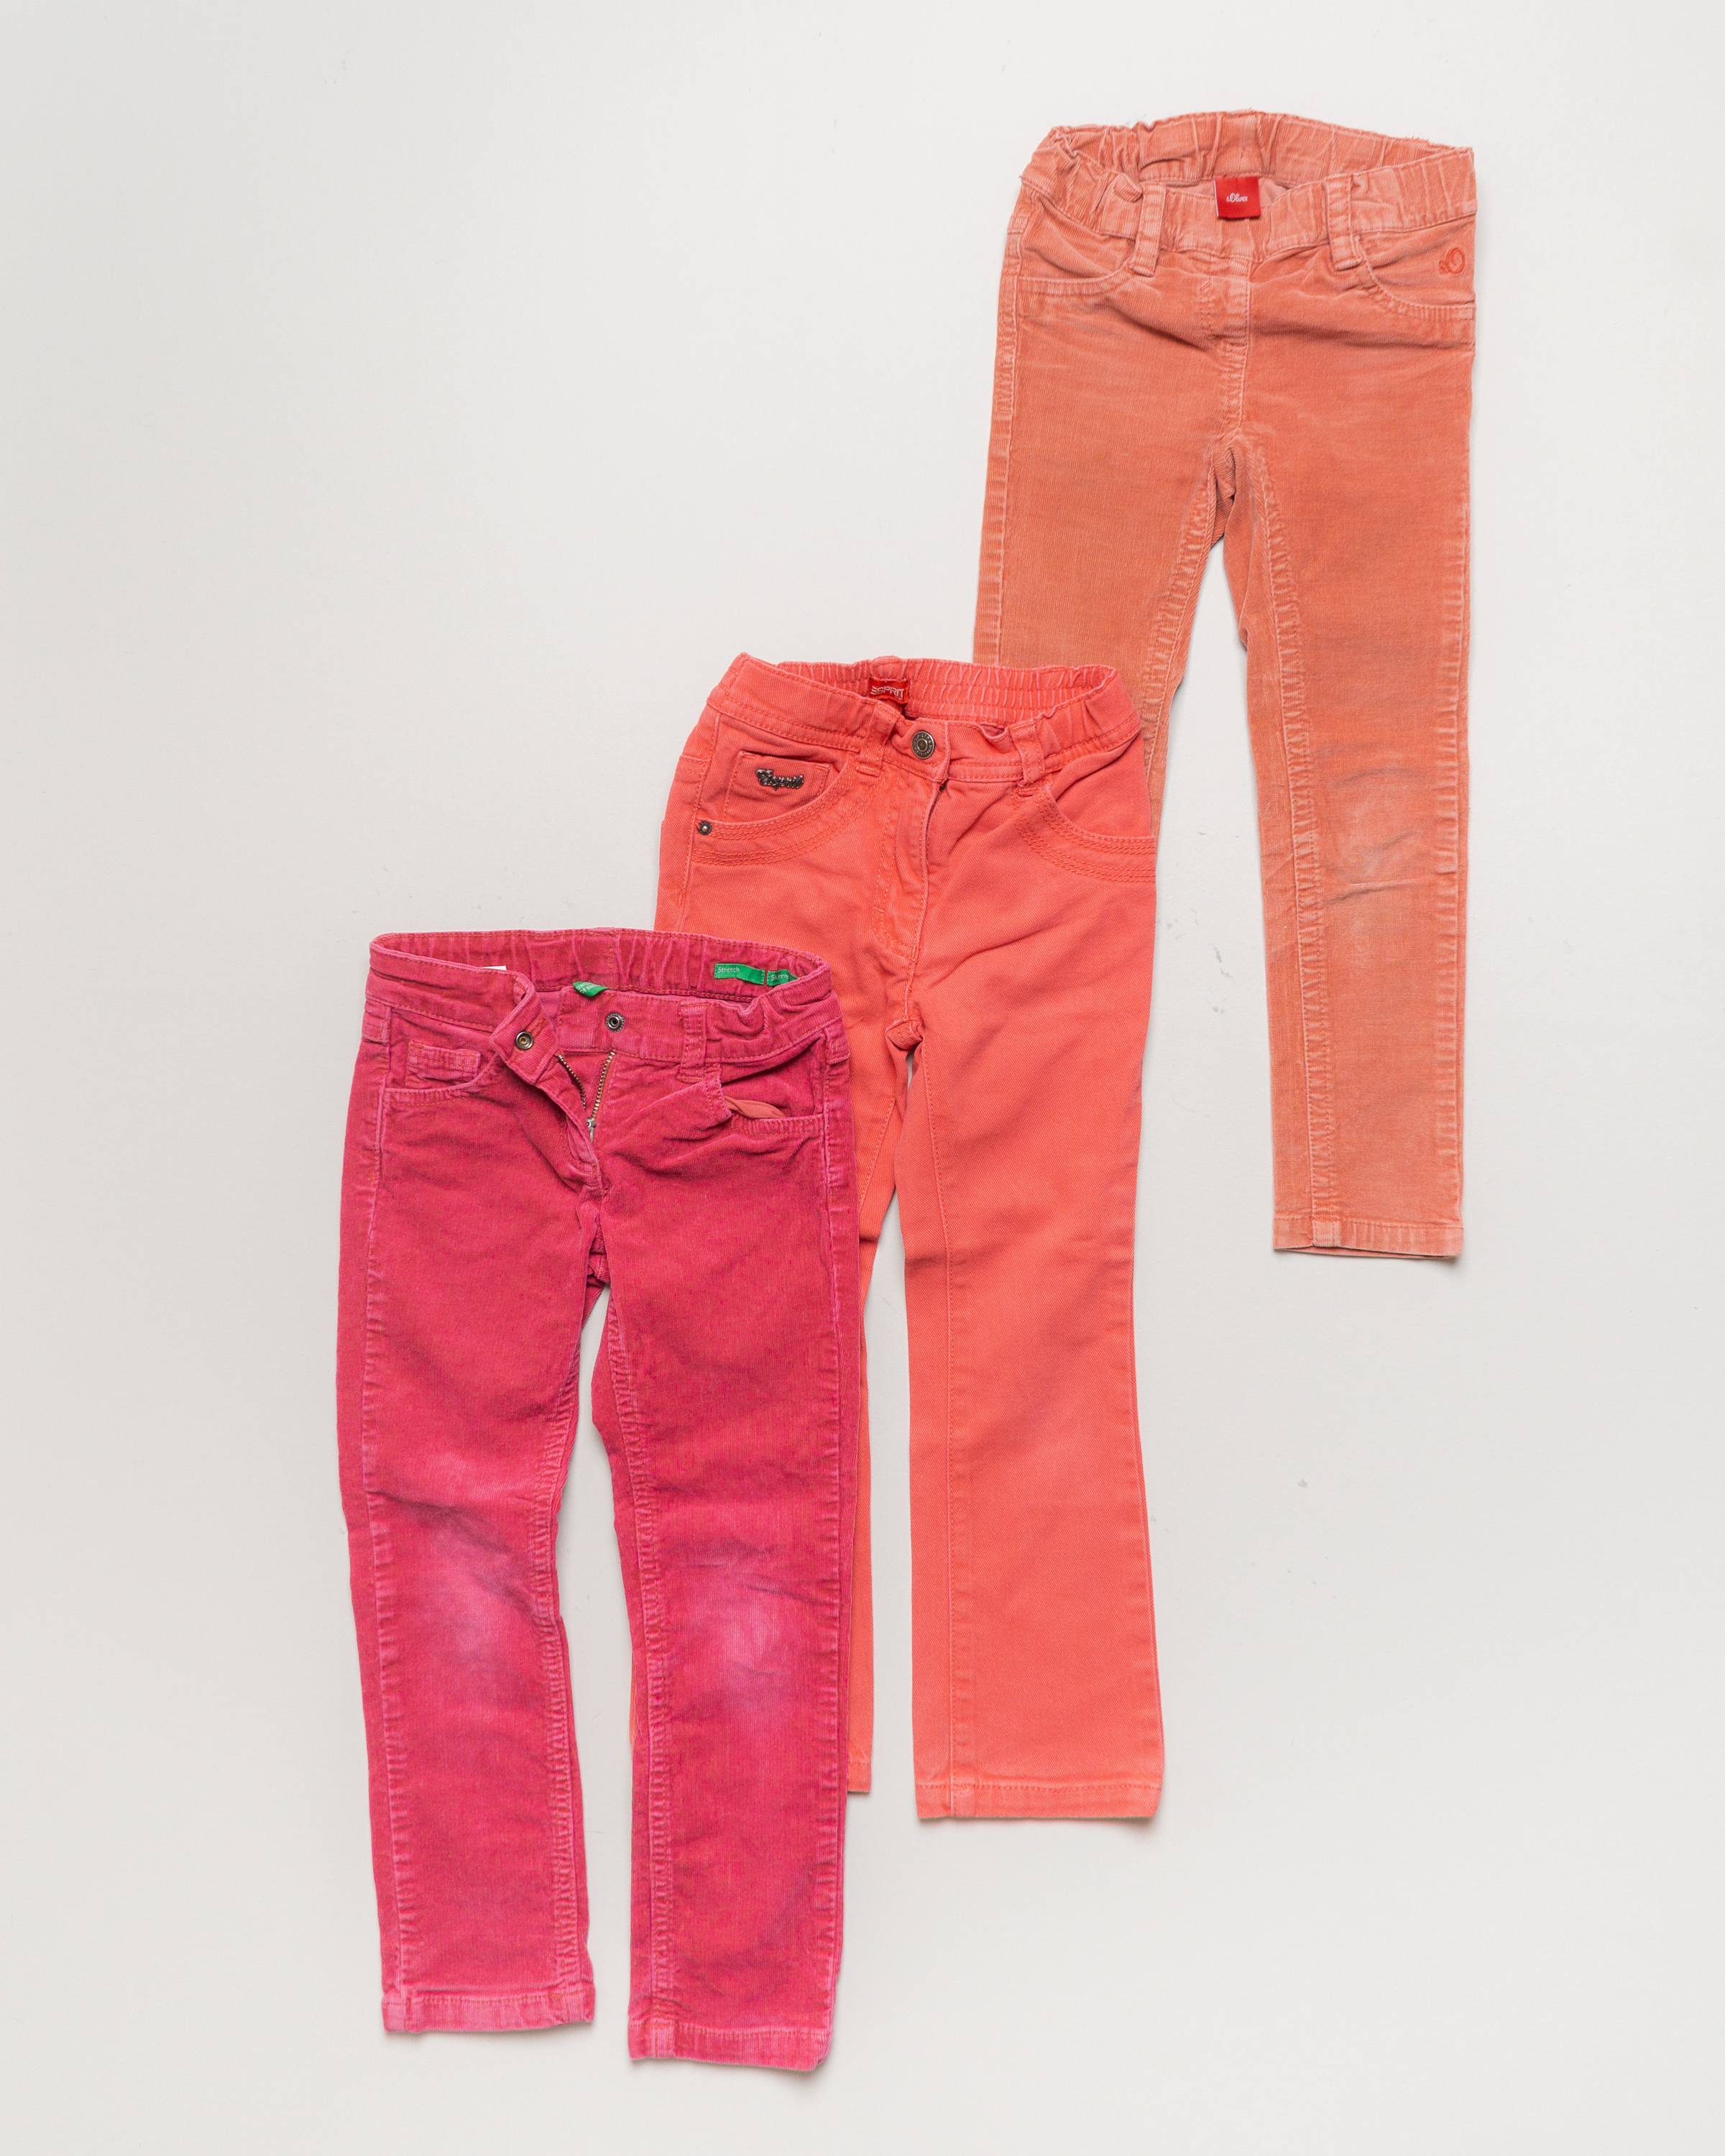 3 Hosen Gr. 110 – 1x Benetton 1x Esprit 1x S.Oliver Set Pack orange pink